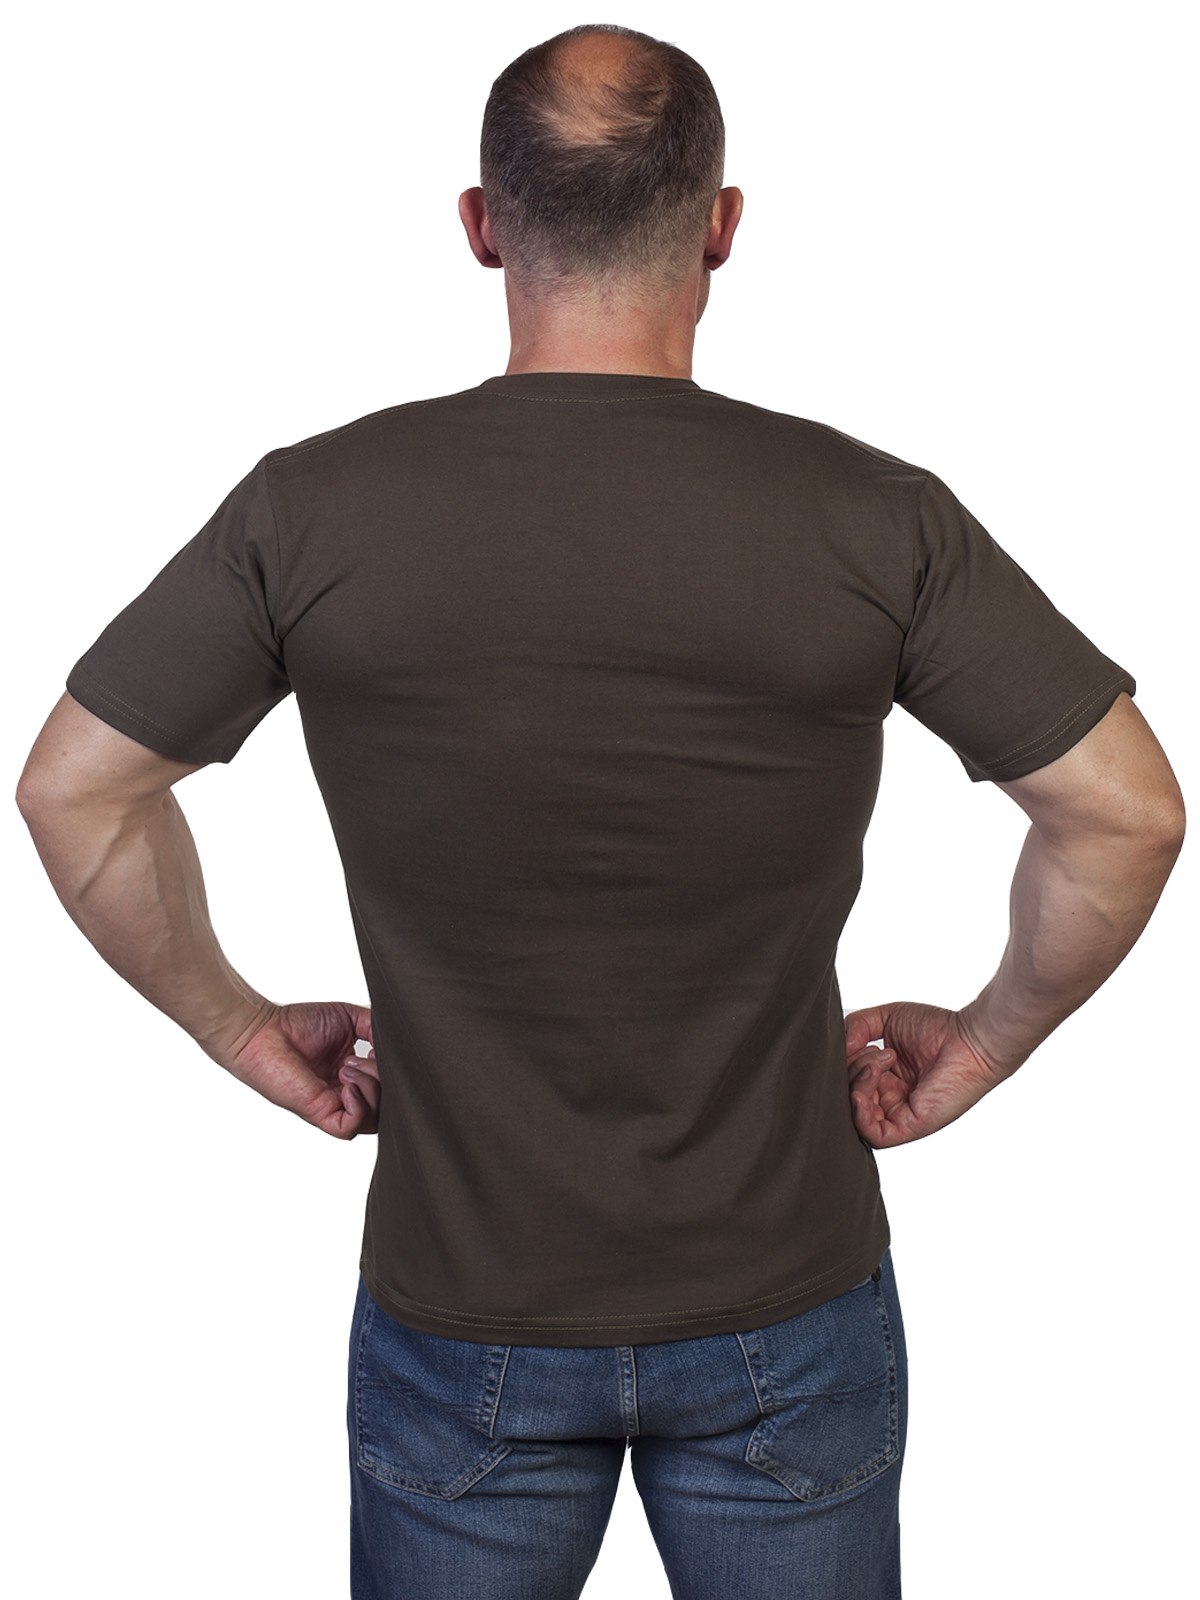 Мужская оливковая футболка военного разведчика 